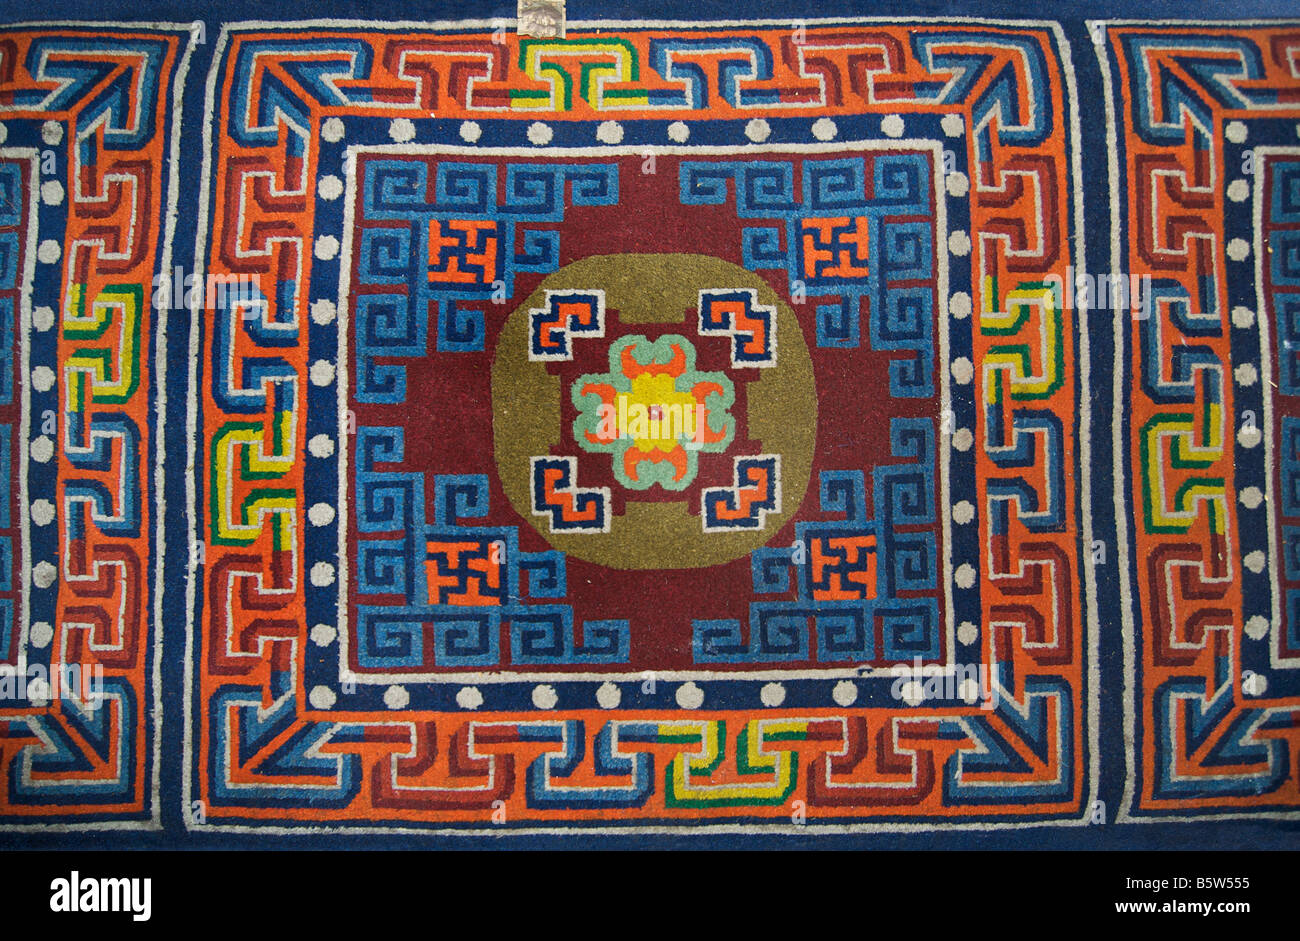 Tibetische Teppiche Polster mit buddhistischen Ikonographie, Drepung, Tibet  Stockfotografie - Alamy